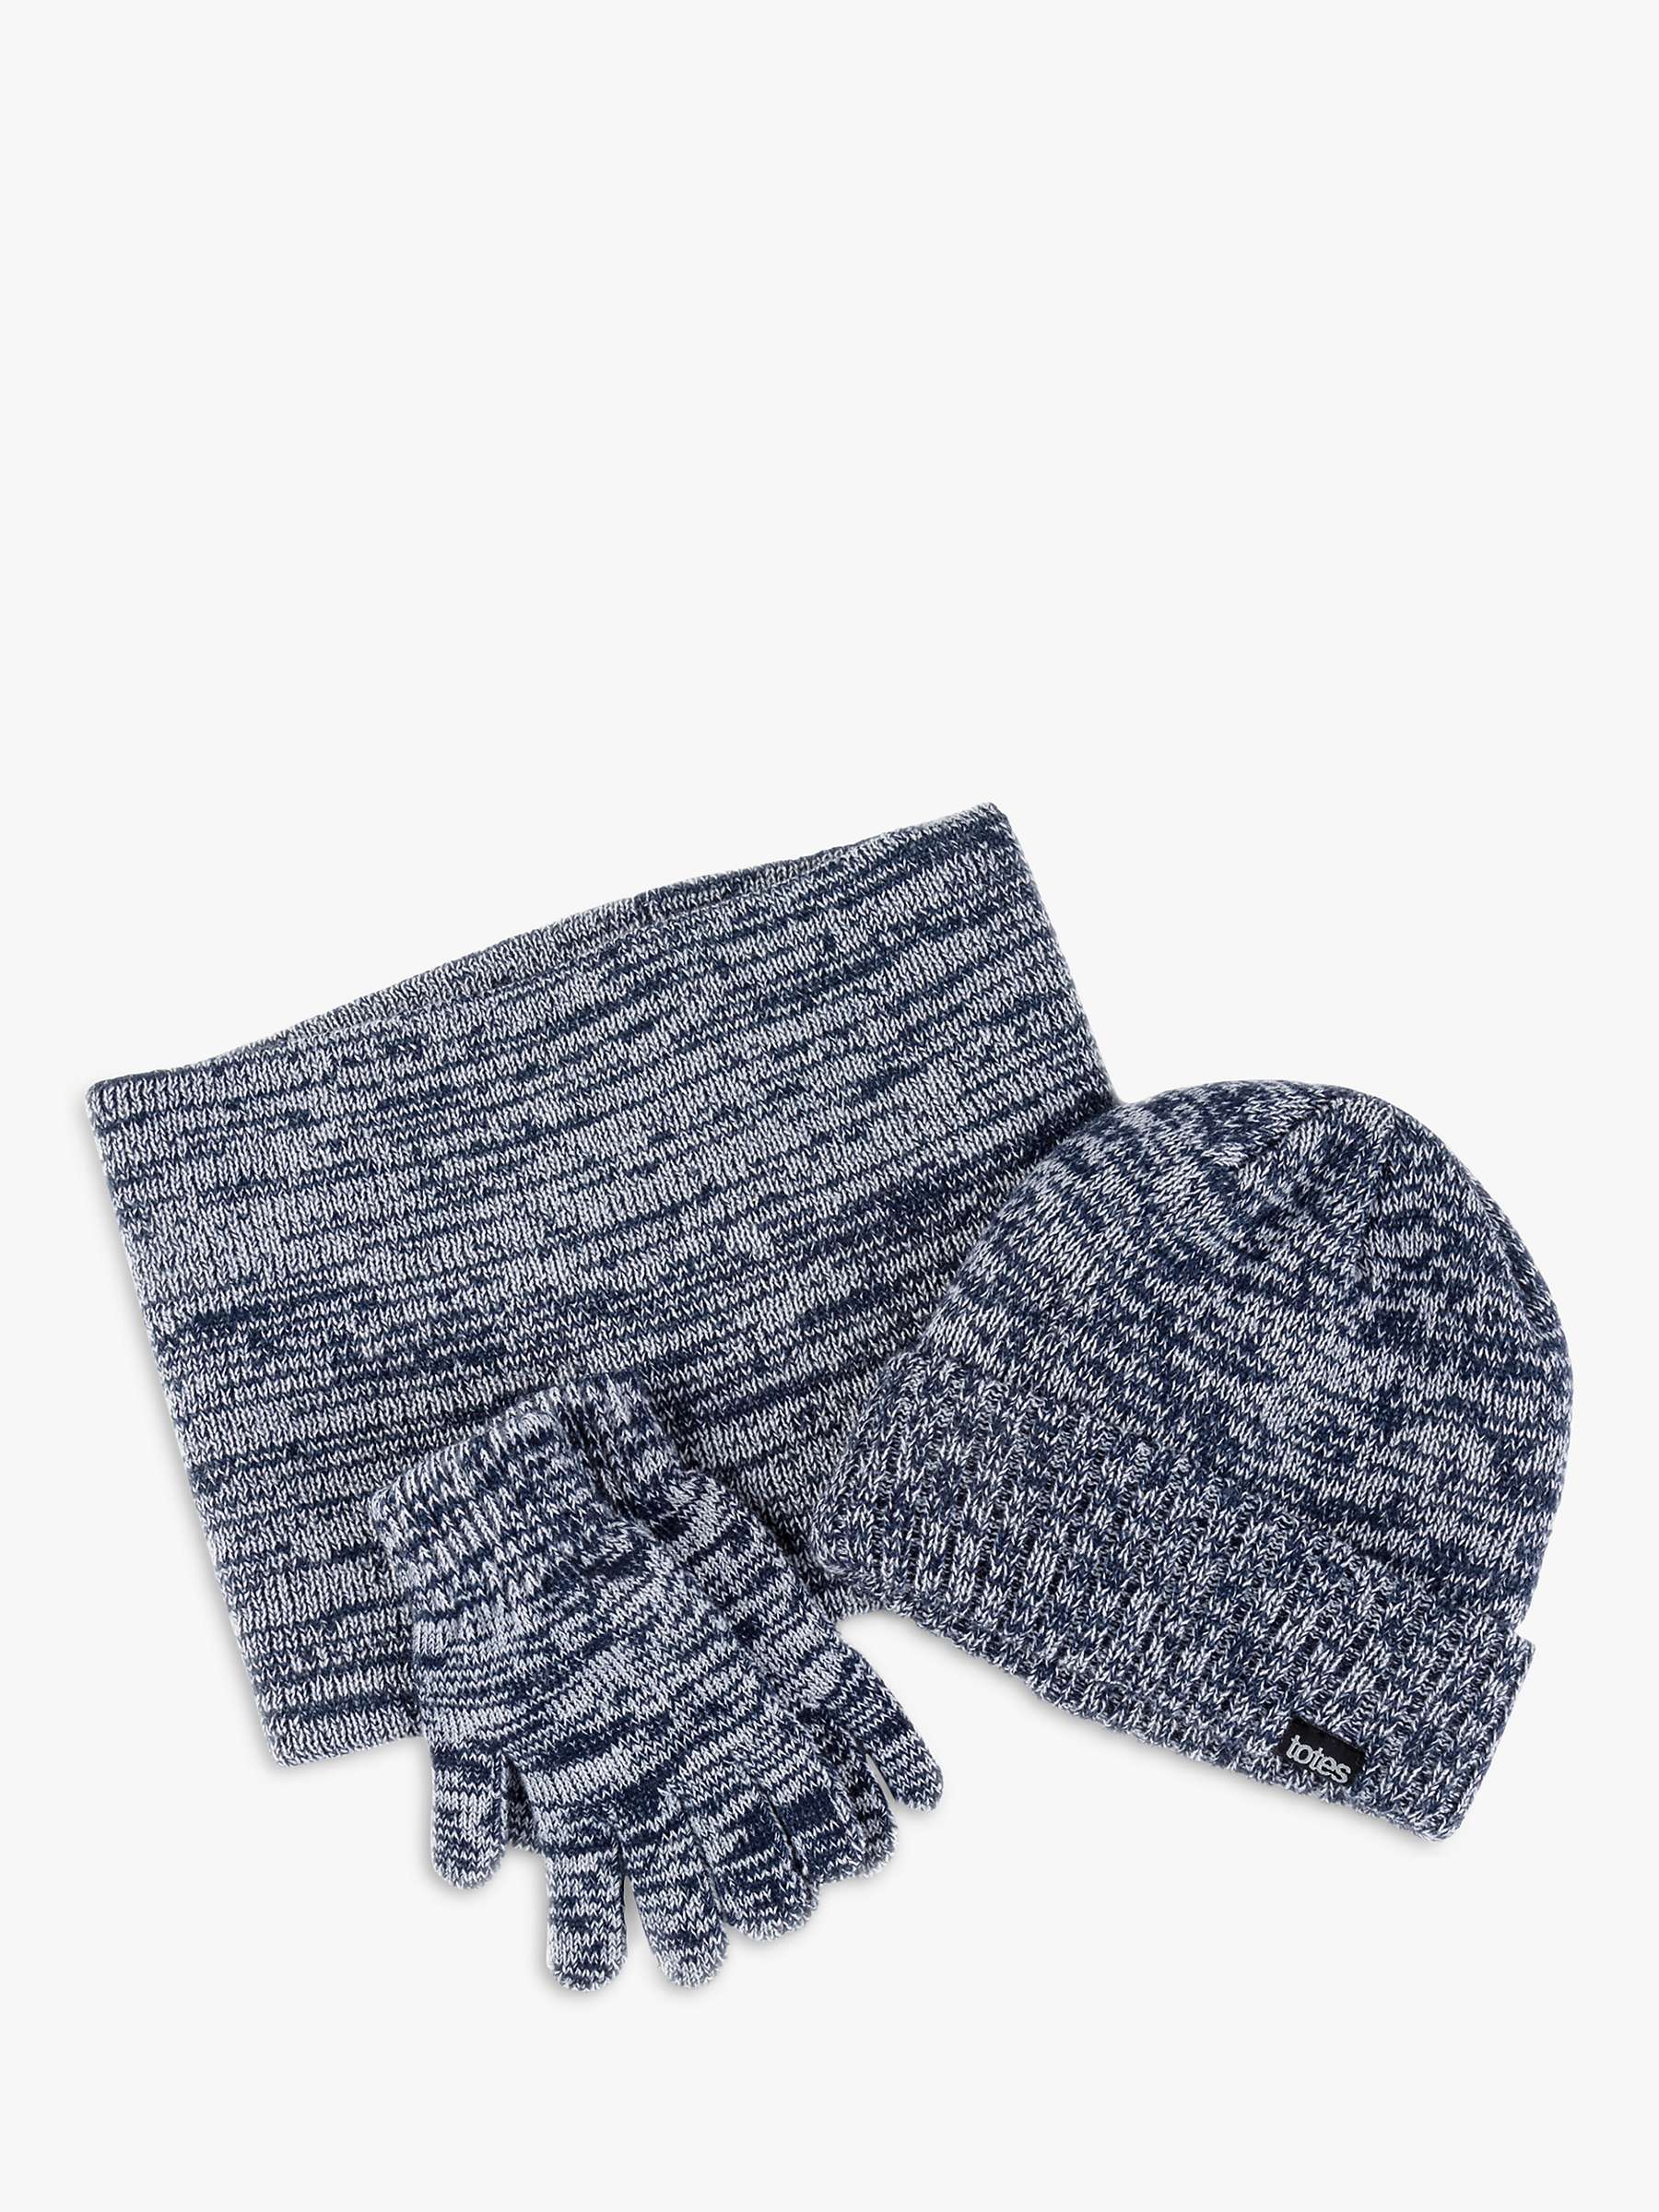 Buy totes Kids' Hat, Gloves & Snood Gift Set Online at johnlewis.com